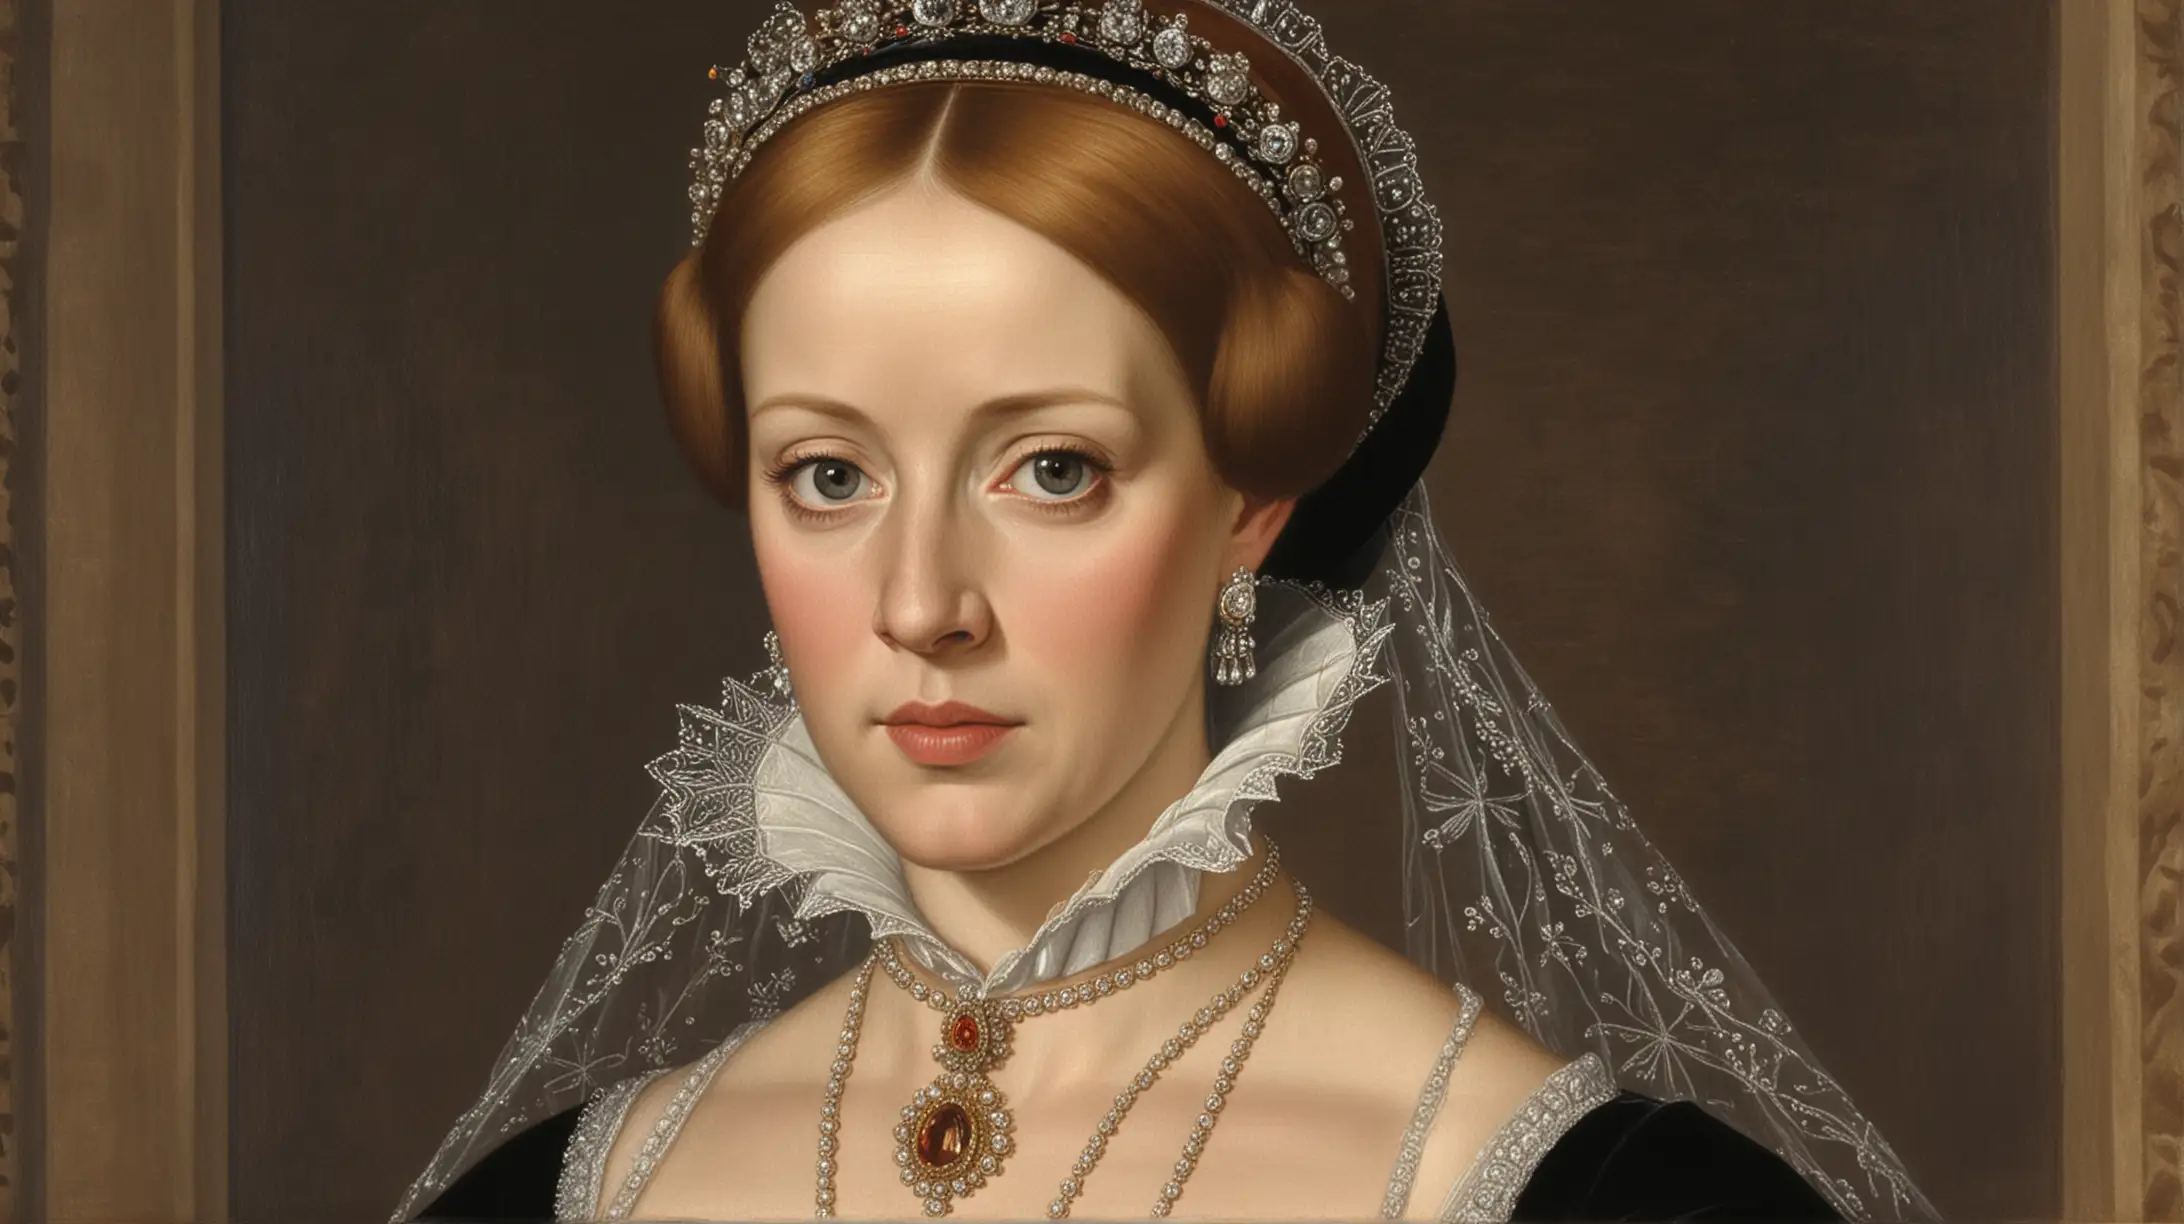   dame una imagen realista de María I de Inglaterra y su persecución r 